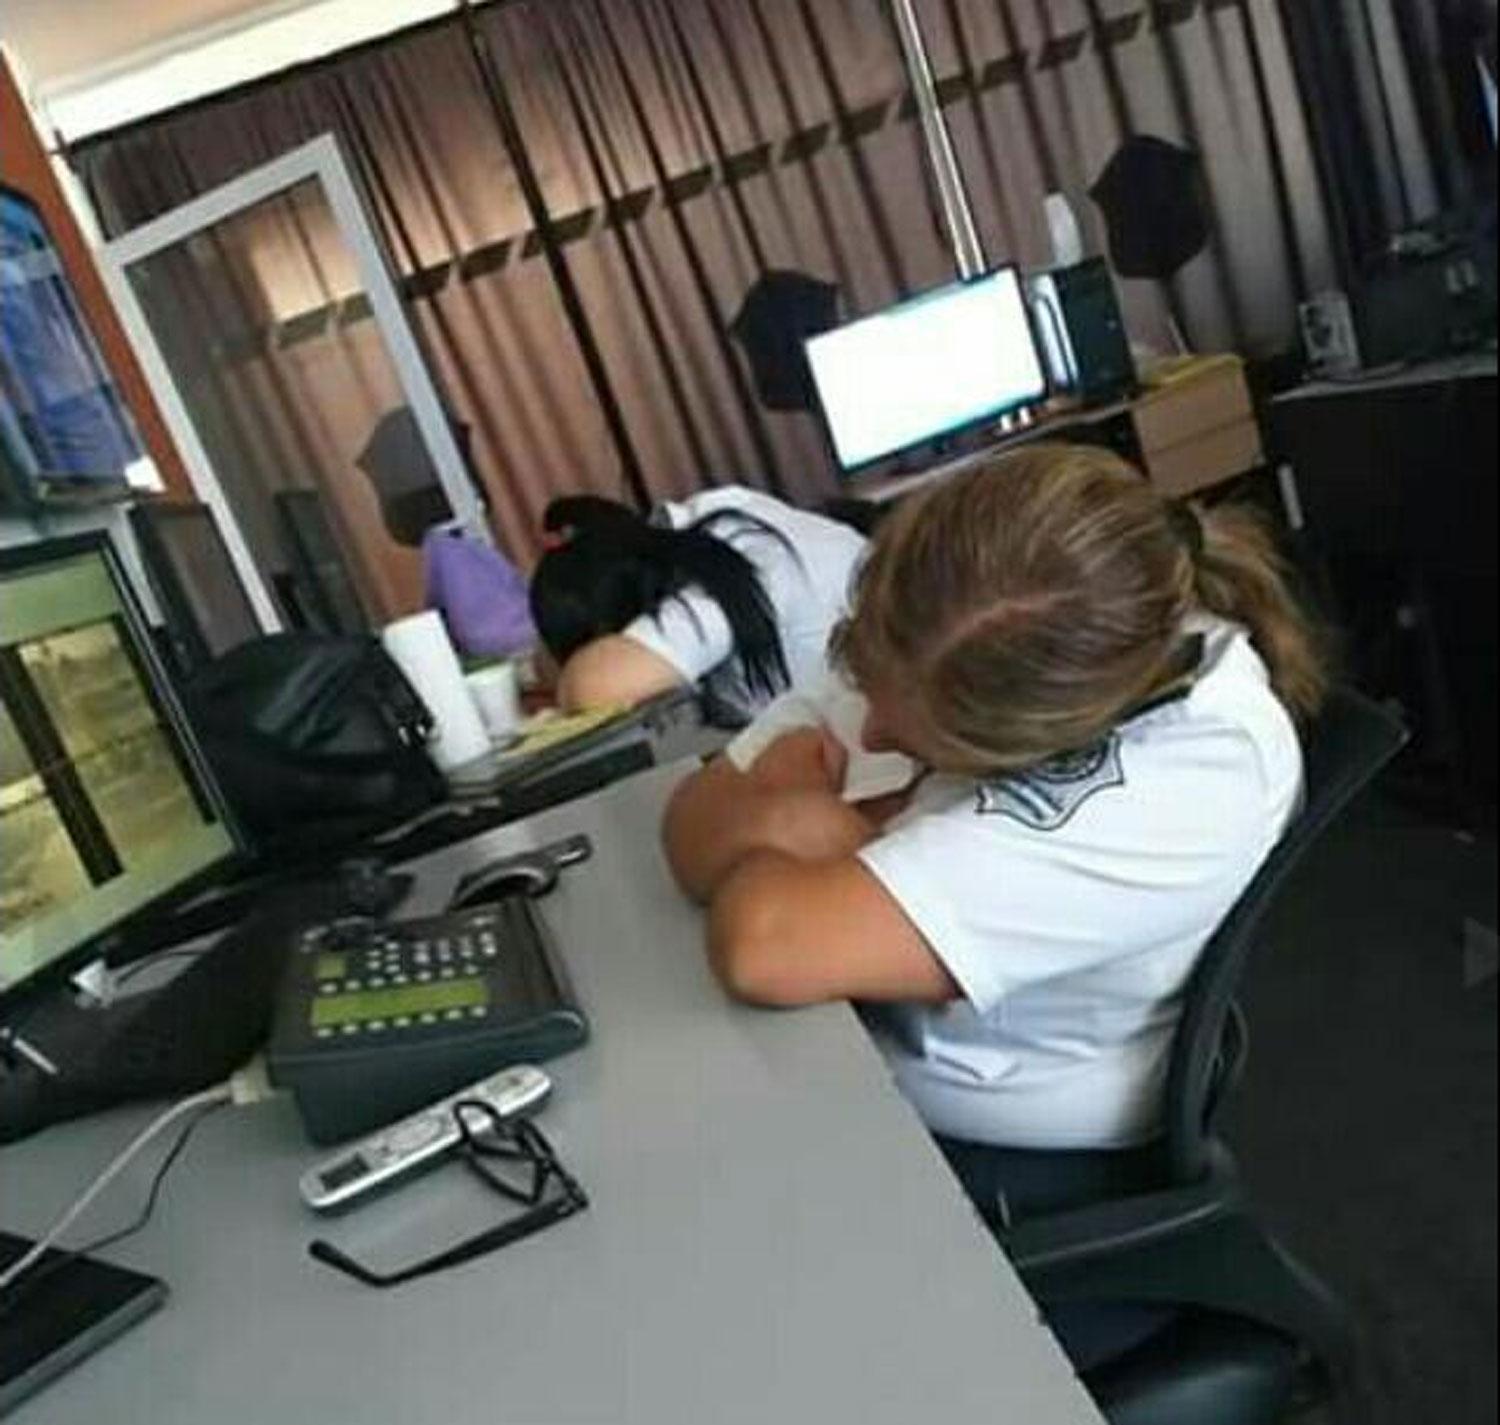 Se viralizaron fotos de policías durmiendo en el Centro de Monitoreo de Aguilares